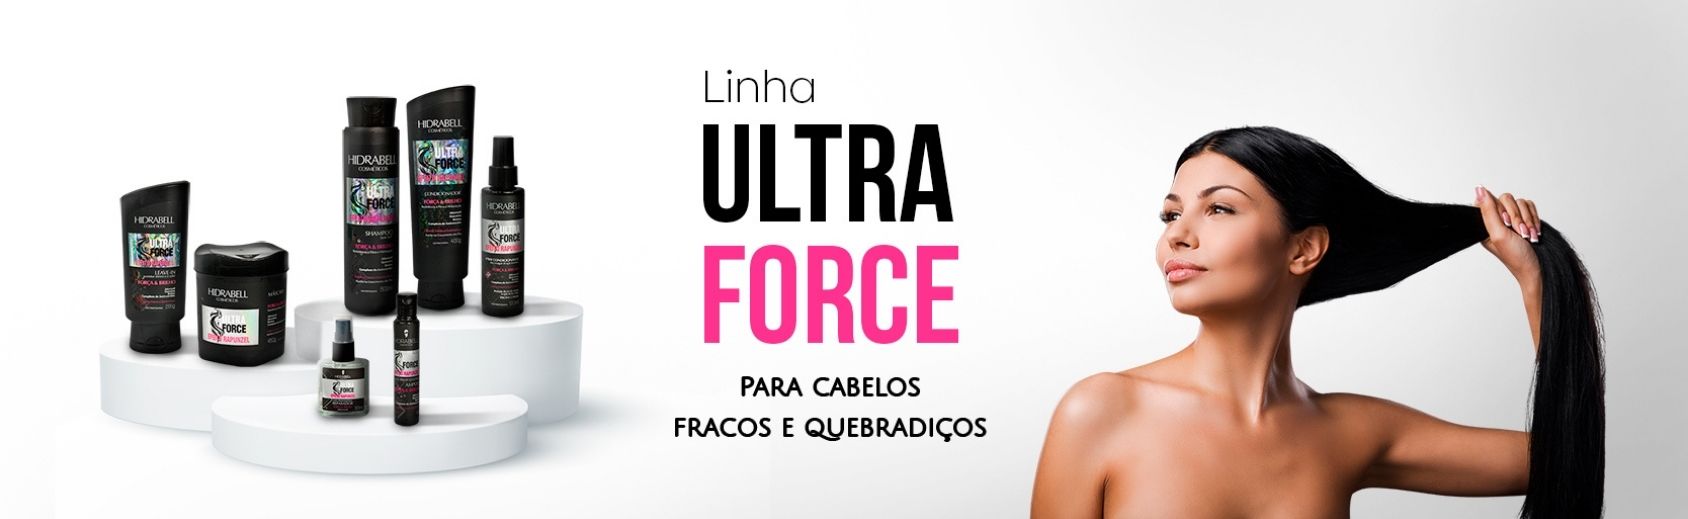 Ultra force @desktop